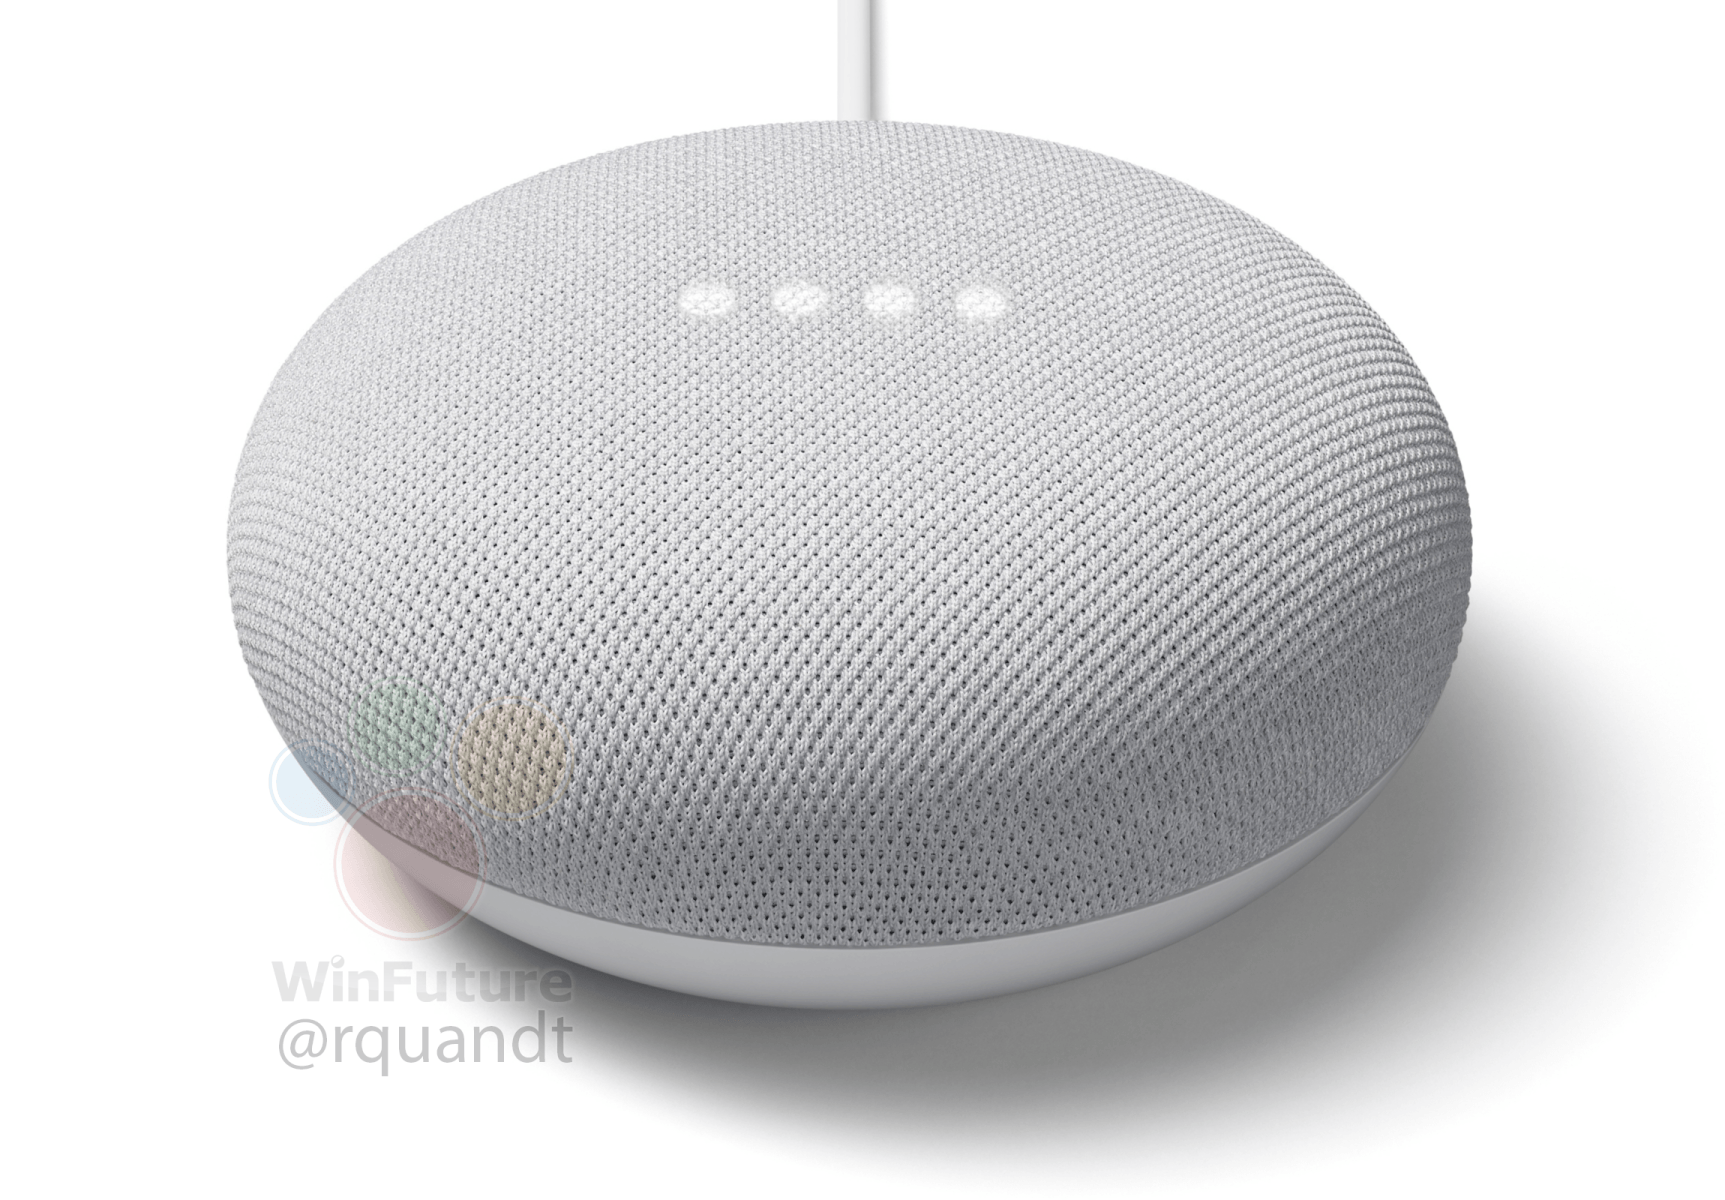 Google Nest Mini cena głośnik inteligentny Asystent Google Home Mini opinie plotki przecieki wycieki